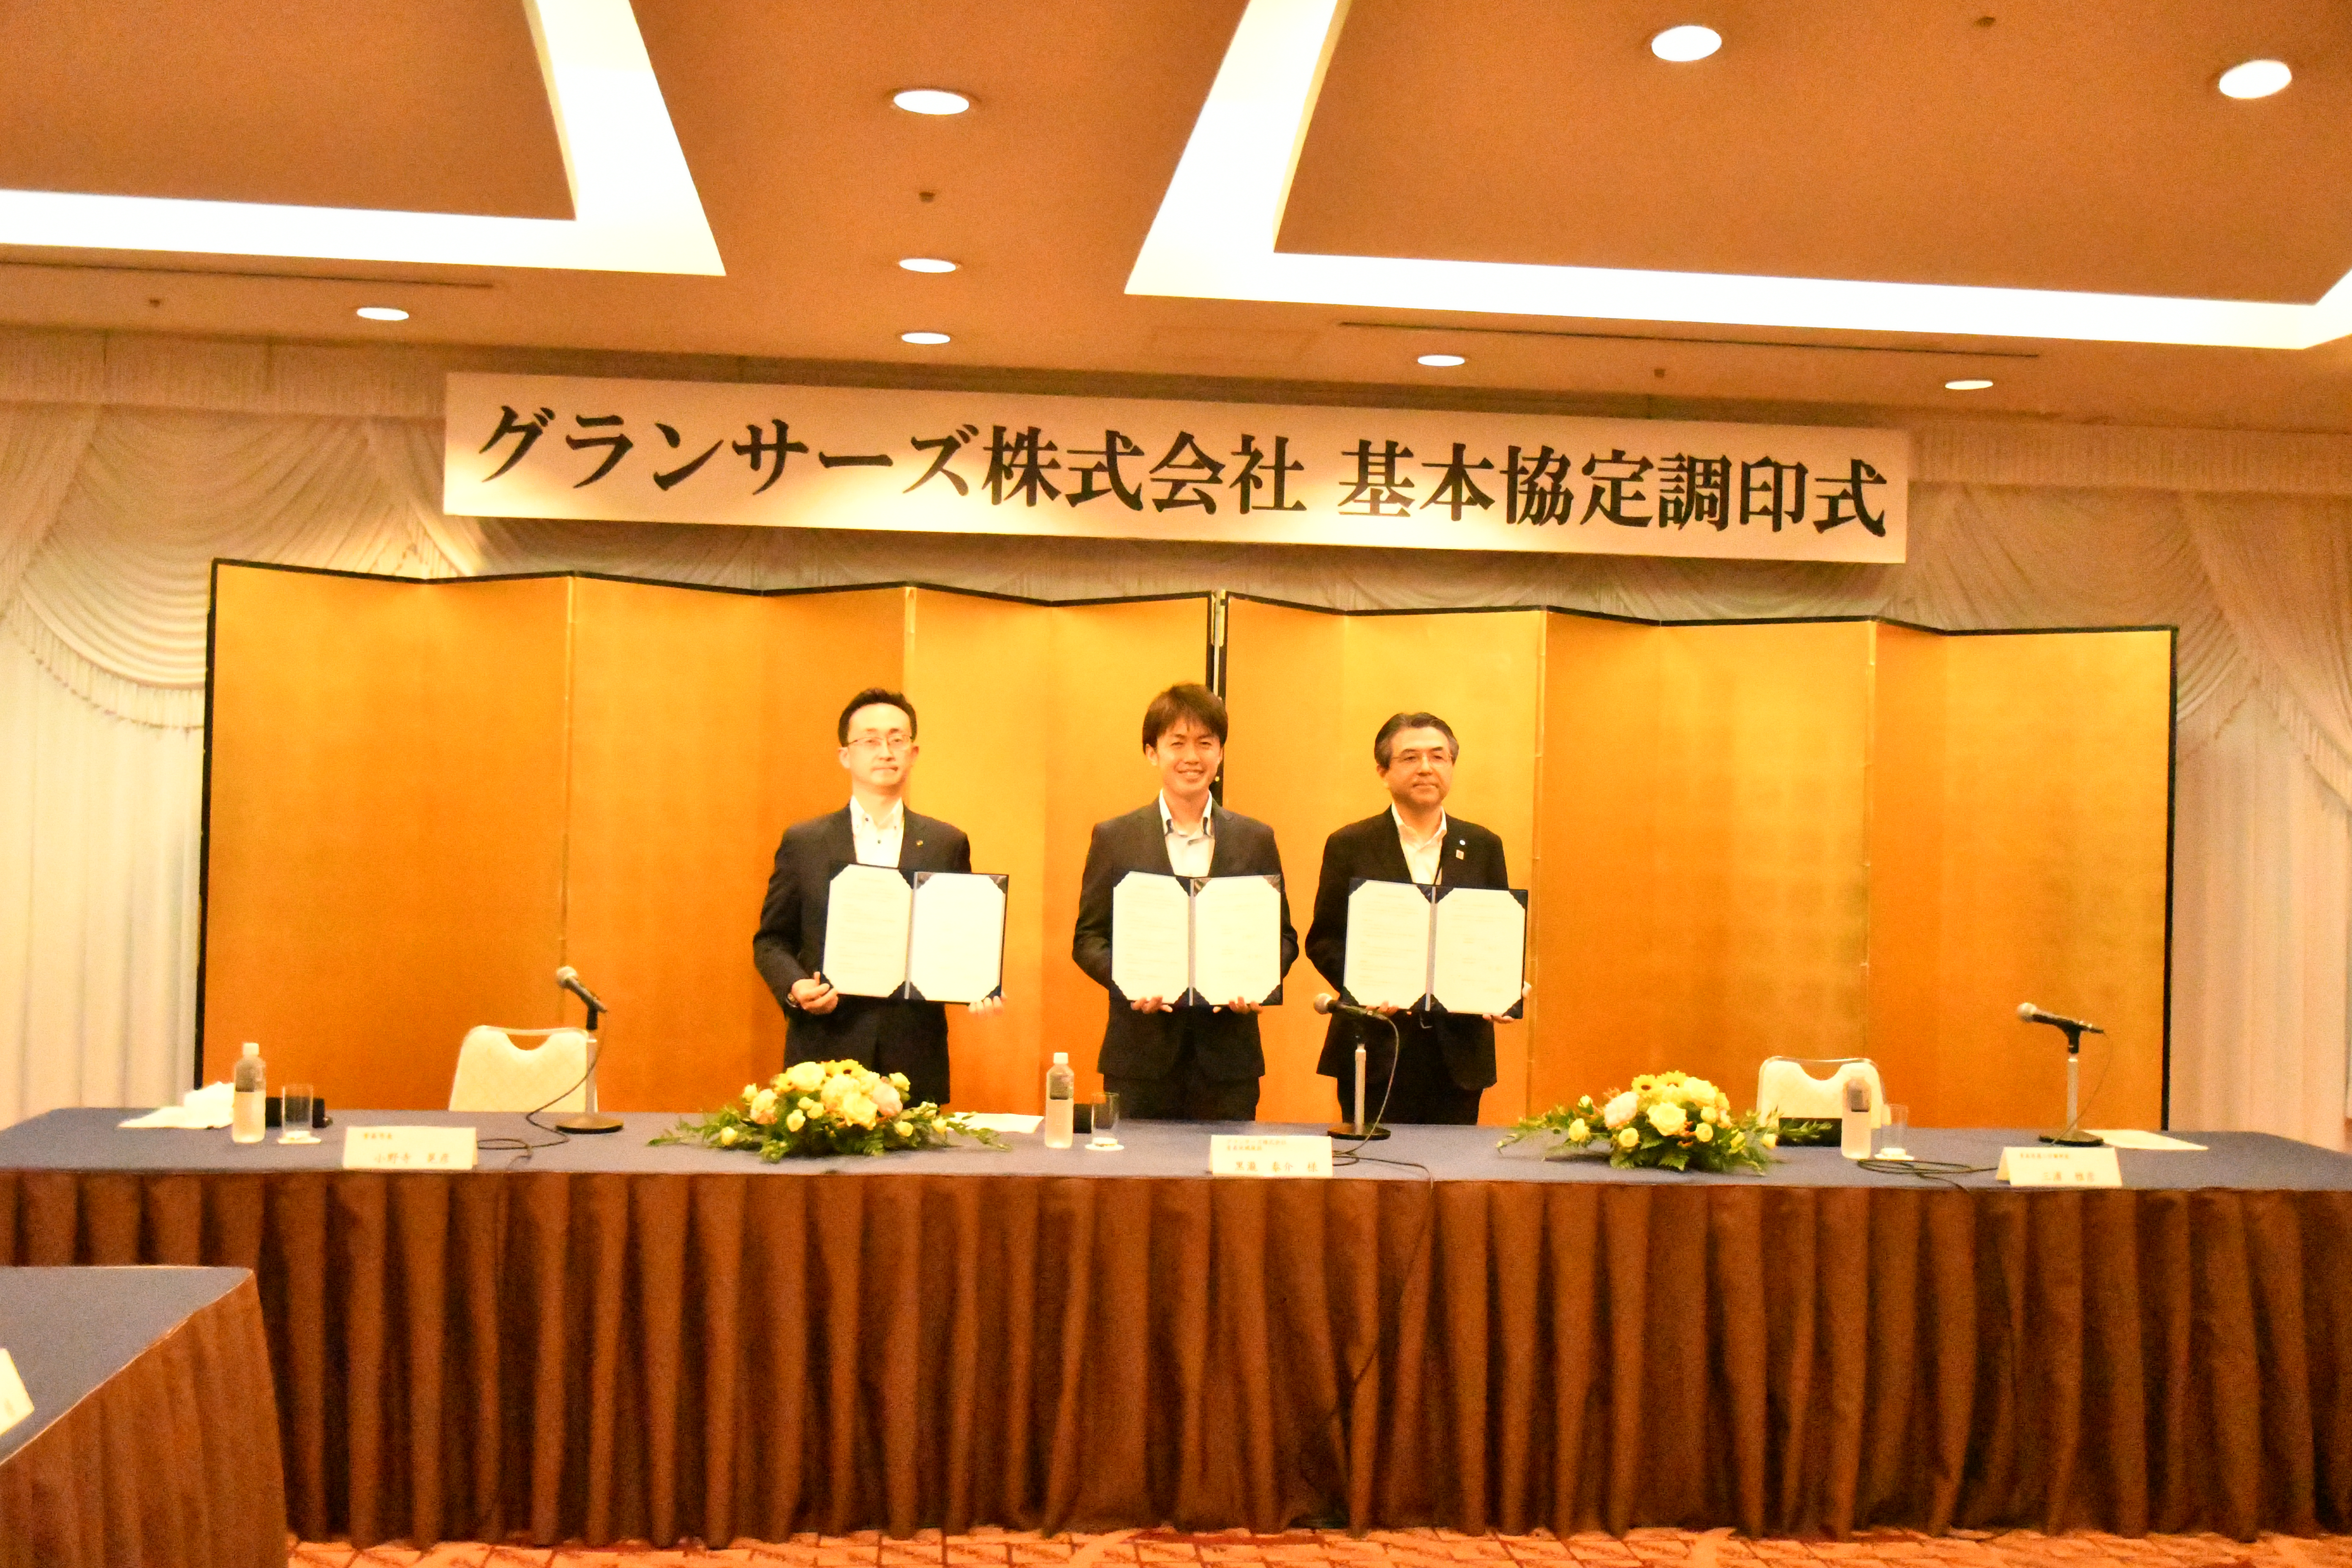 左から小野寺市長、黒瀧青森地域統括、青森県商工労労働部 三浦部長